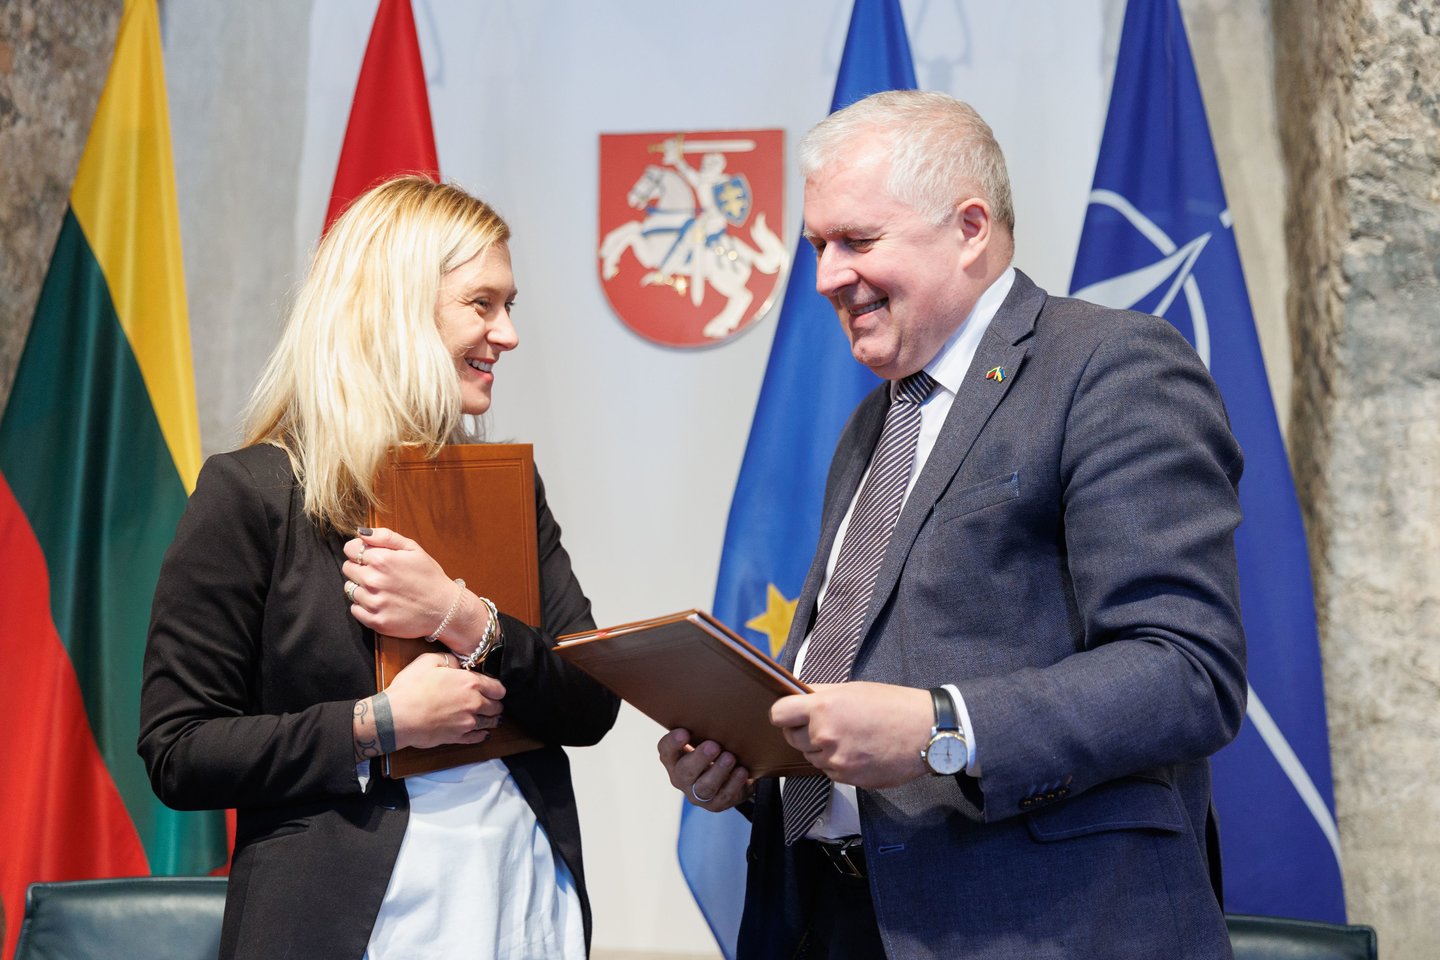  KAM penktadienį pasirašė sutartį dėl Ukrainai skirtų dronų kamikadzių įsigijimo iš Lenkijos įmonės.<br> T.Bauro nuotr.